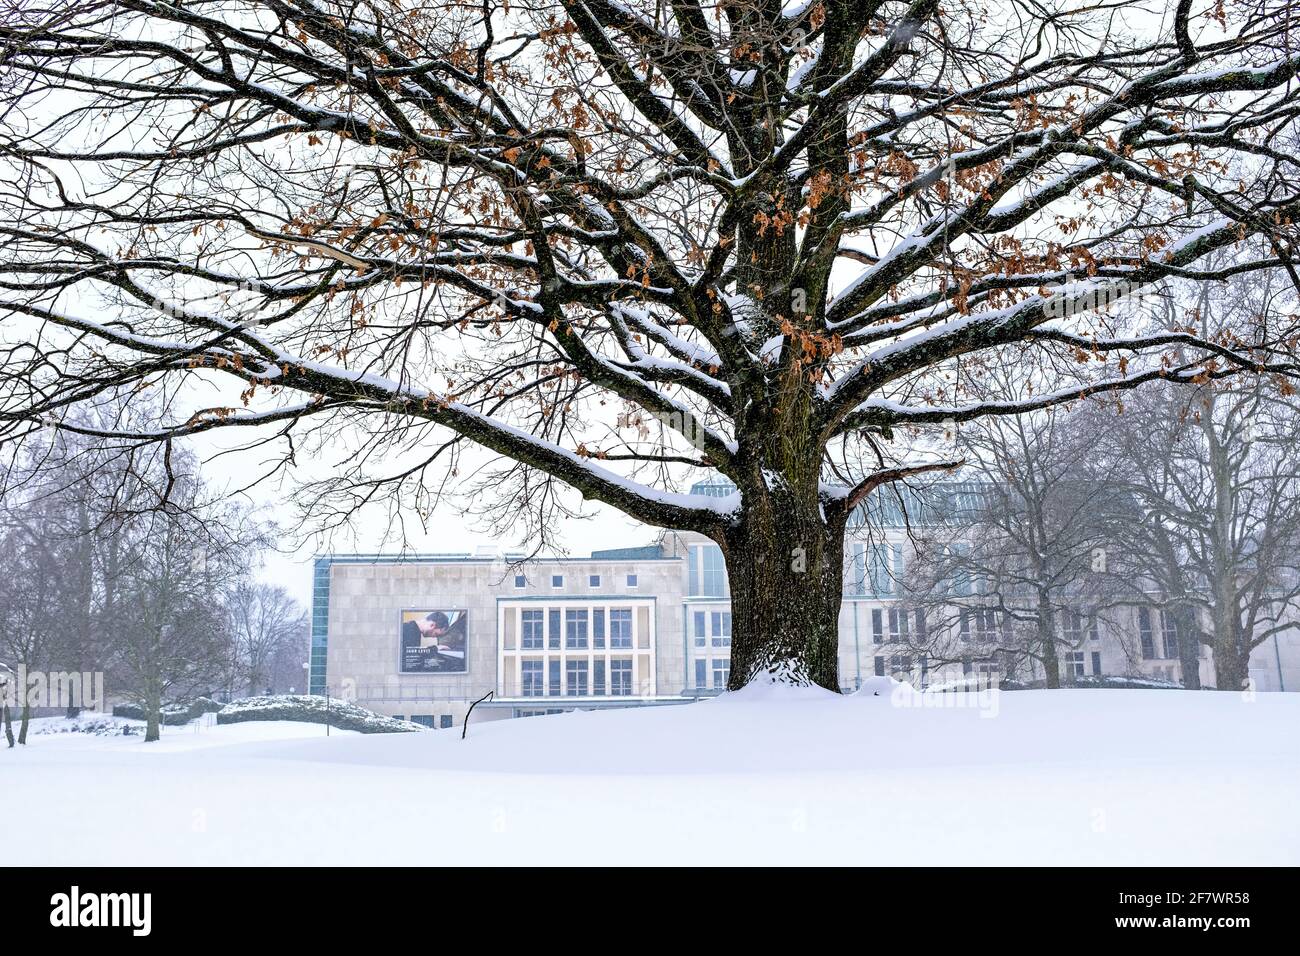 08.02.2021, Essen, Nordrhein-Westfalen, Deutschland - Essener Philharmonie im Schnee Stock Photo